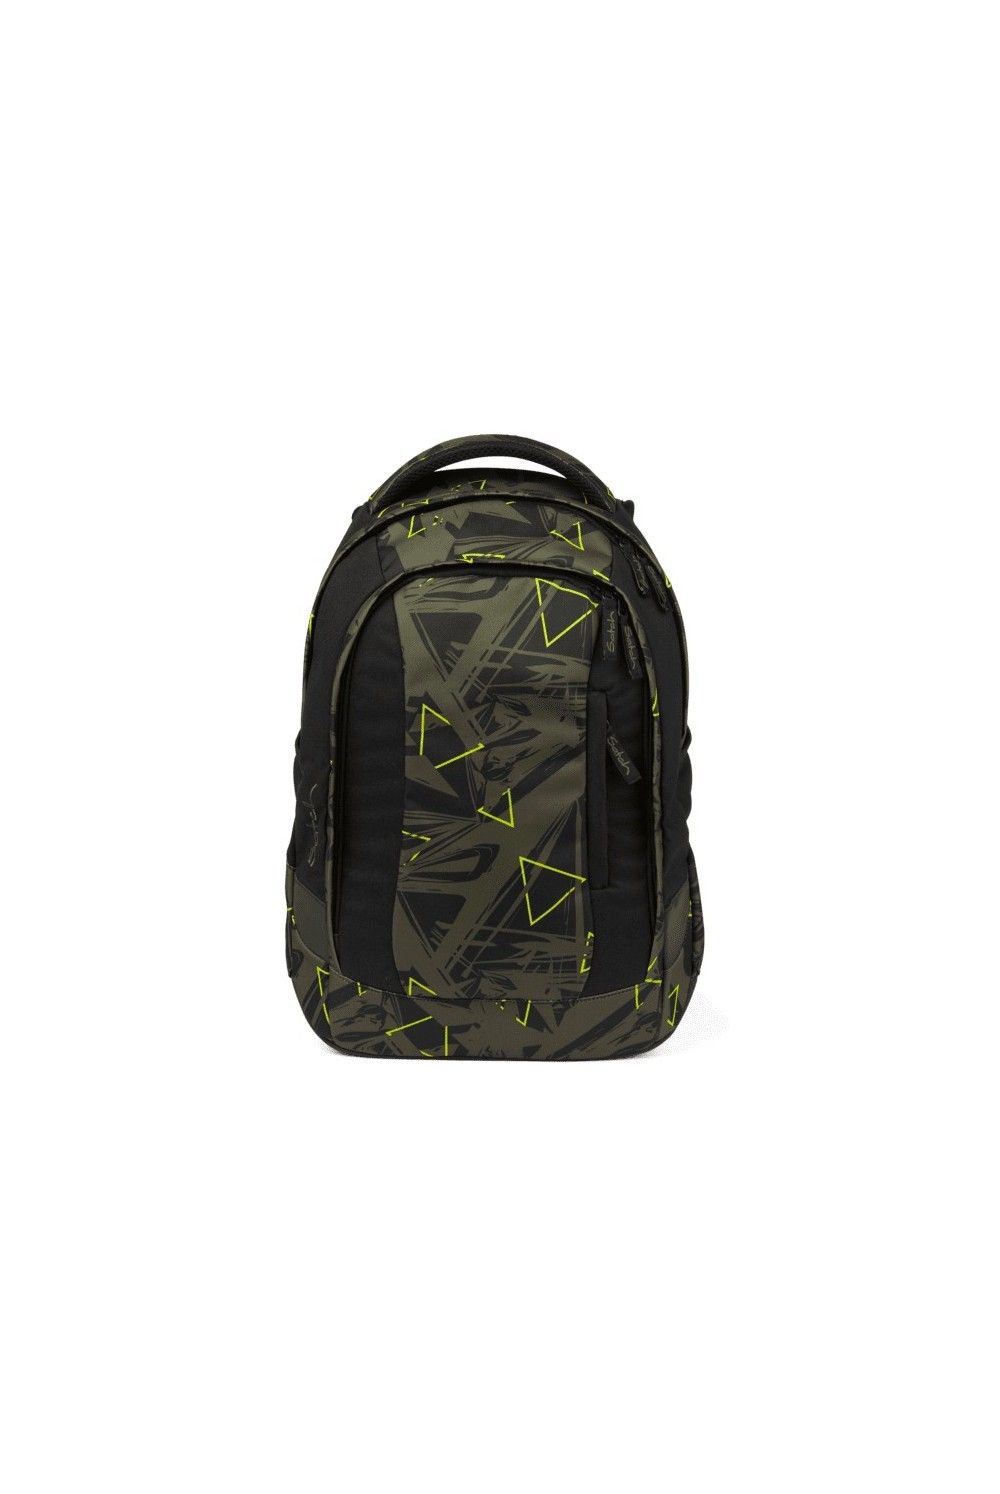 jungle lazer grün graue Satch pack Sporttasche Reisetasche Tasche Kind 50 cm 